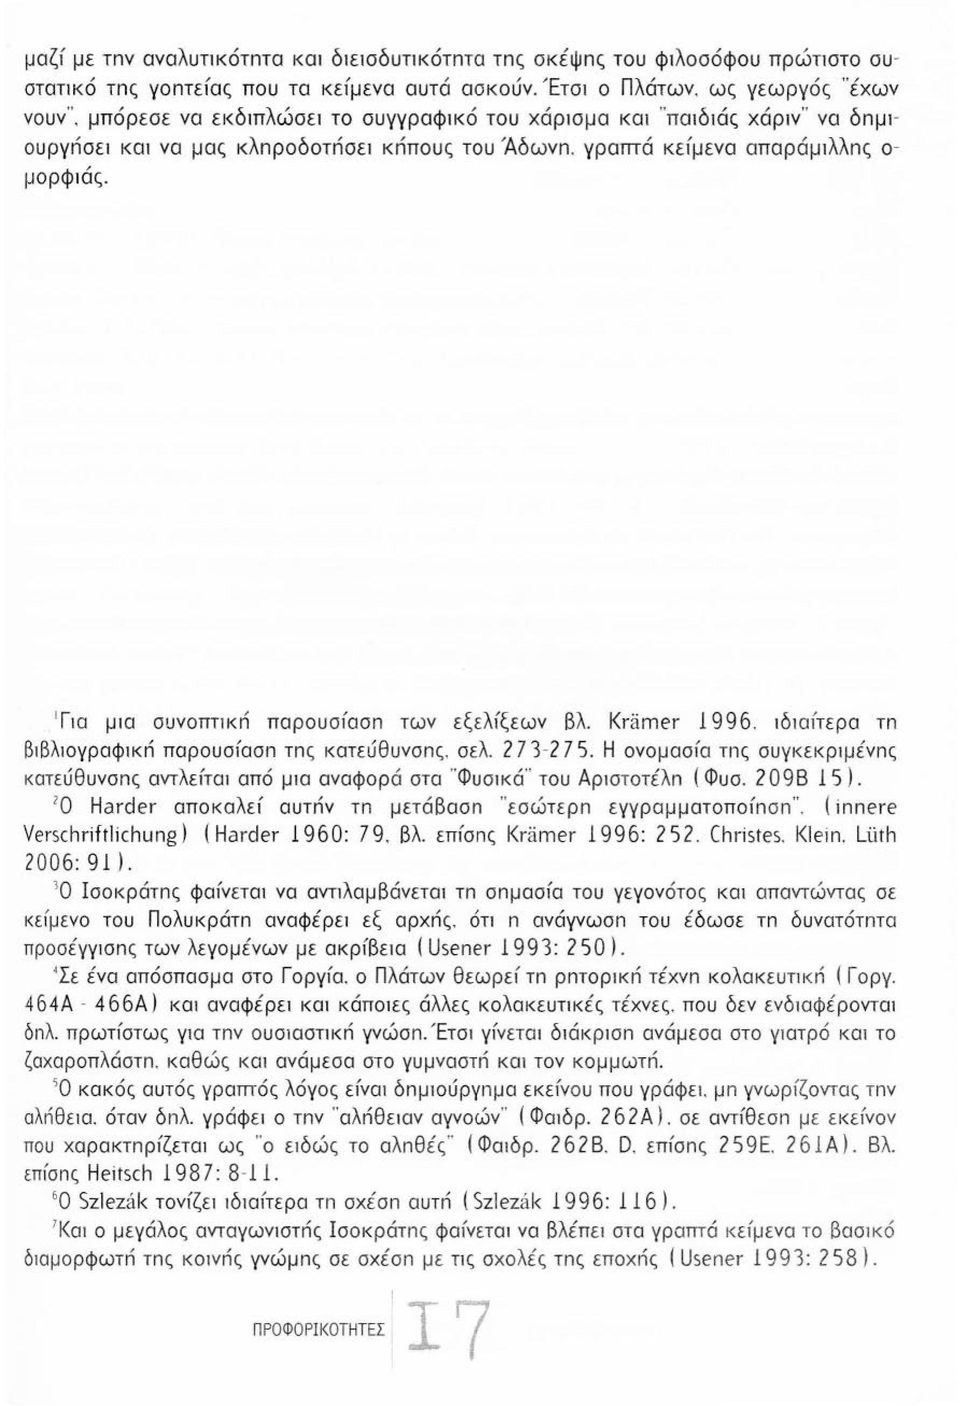 Kramer 996. ιδαίτερα τn βιβλιογραφκn παρουσίασn τnς κατεύθυνσnς. σελ. 273-2 75. Η ονομασία τnς συγκειφιμένnς κατεύθυνσnς αντλείται από μια αναφορά στα " Φυσικά " του Αριστοτέλn ( Φυσ. 2098 5).